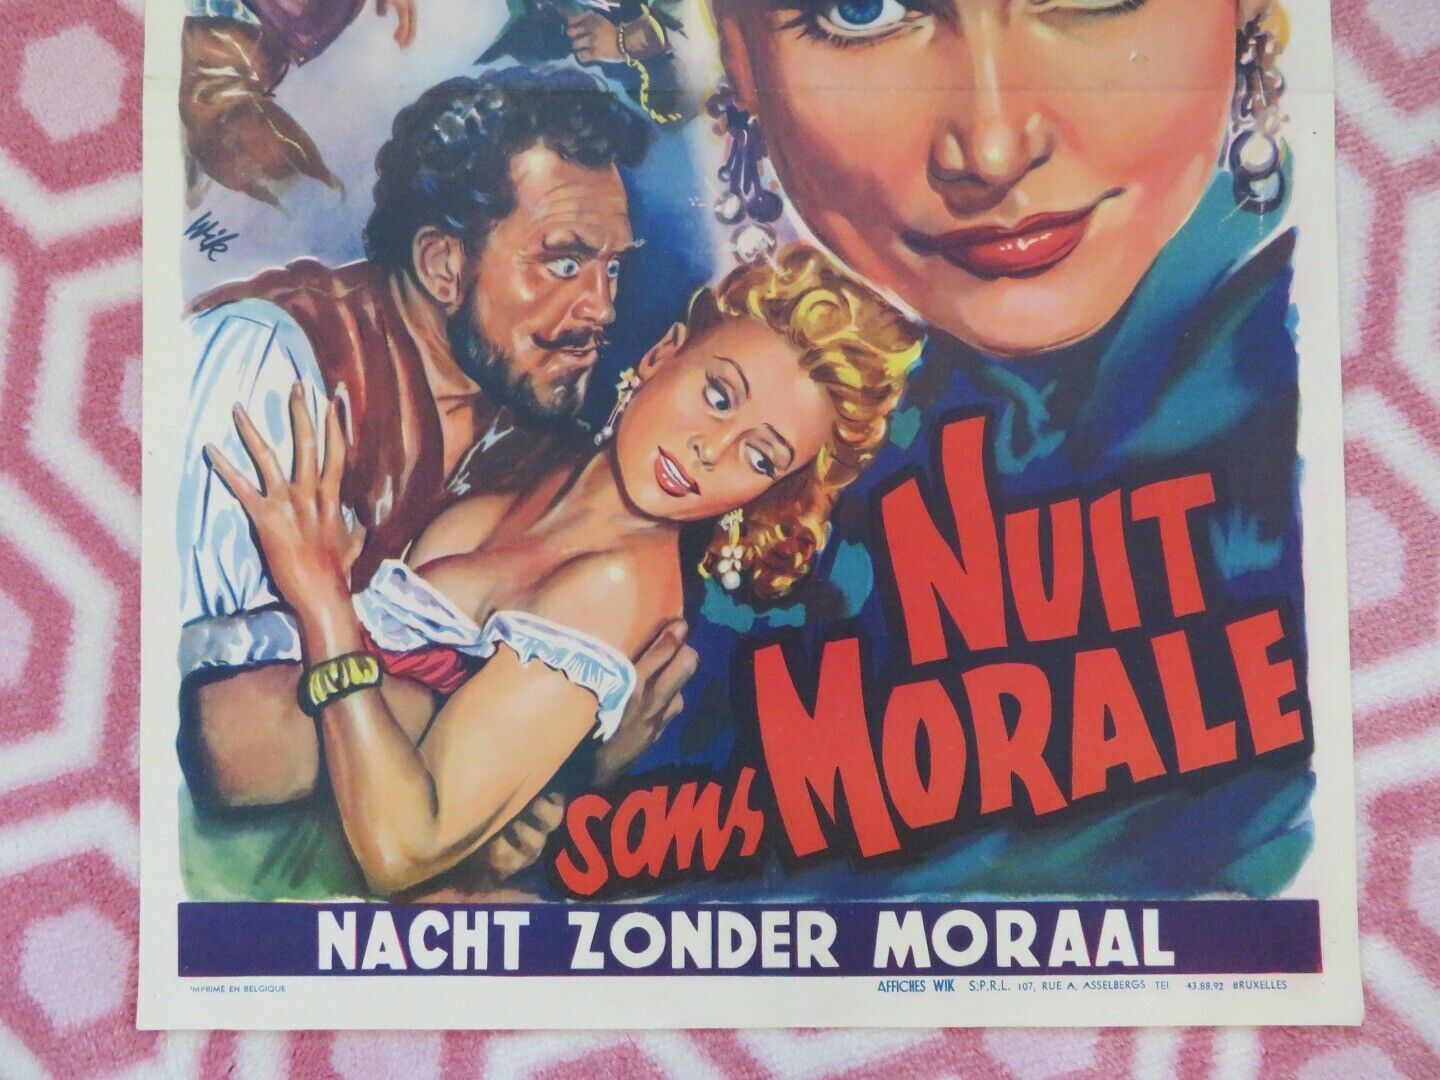 NACHT ZONDER MORAAL/ Die Nacht ohne Moral  BELGIUM (21.5"x14") POSTER 1953